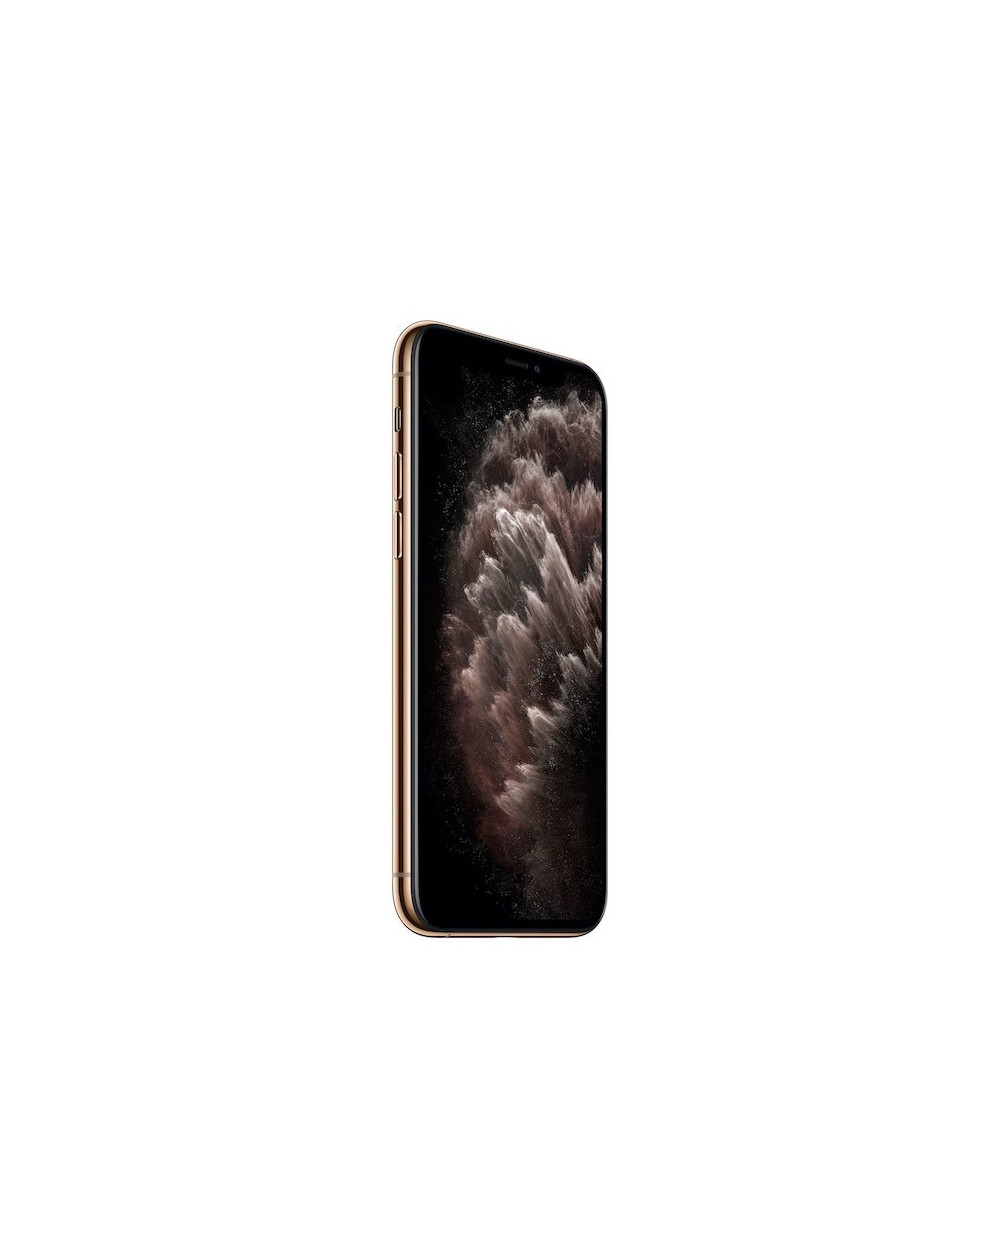 iPhone 11 Pro Max 64GB Gold - Prodotto rigenerato di grado B